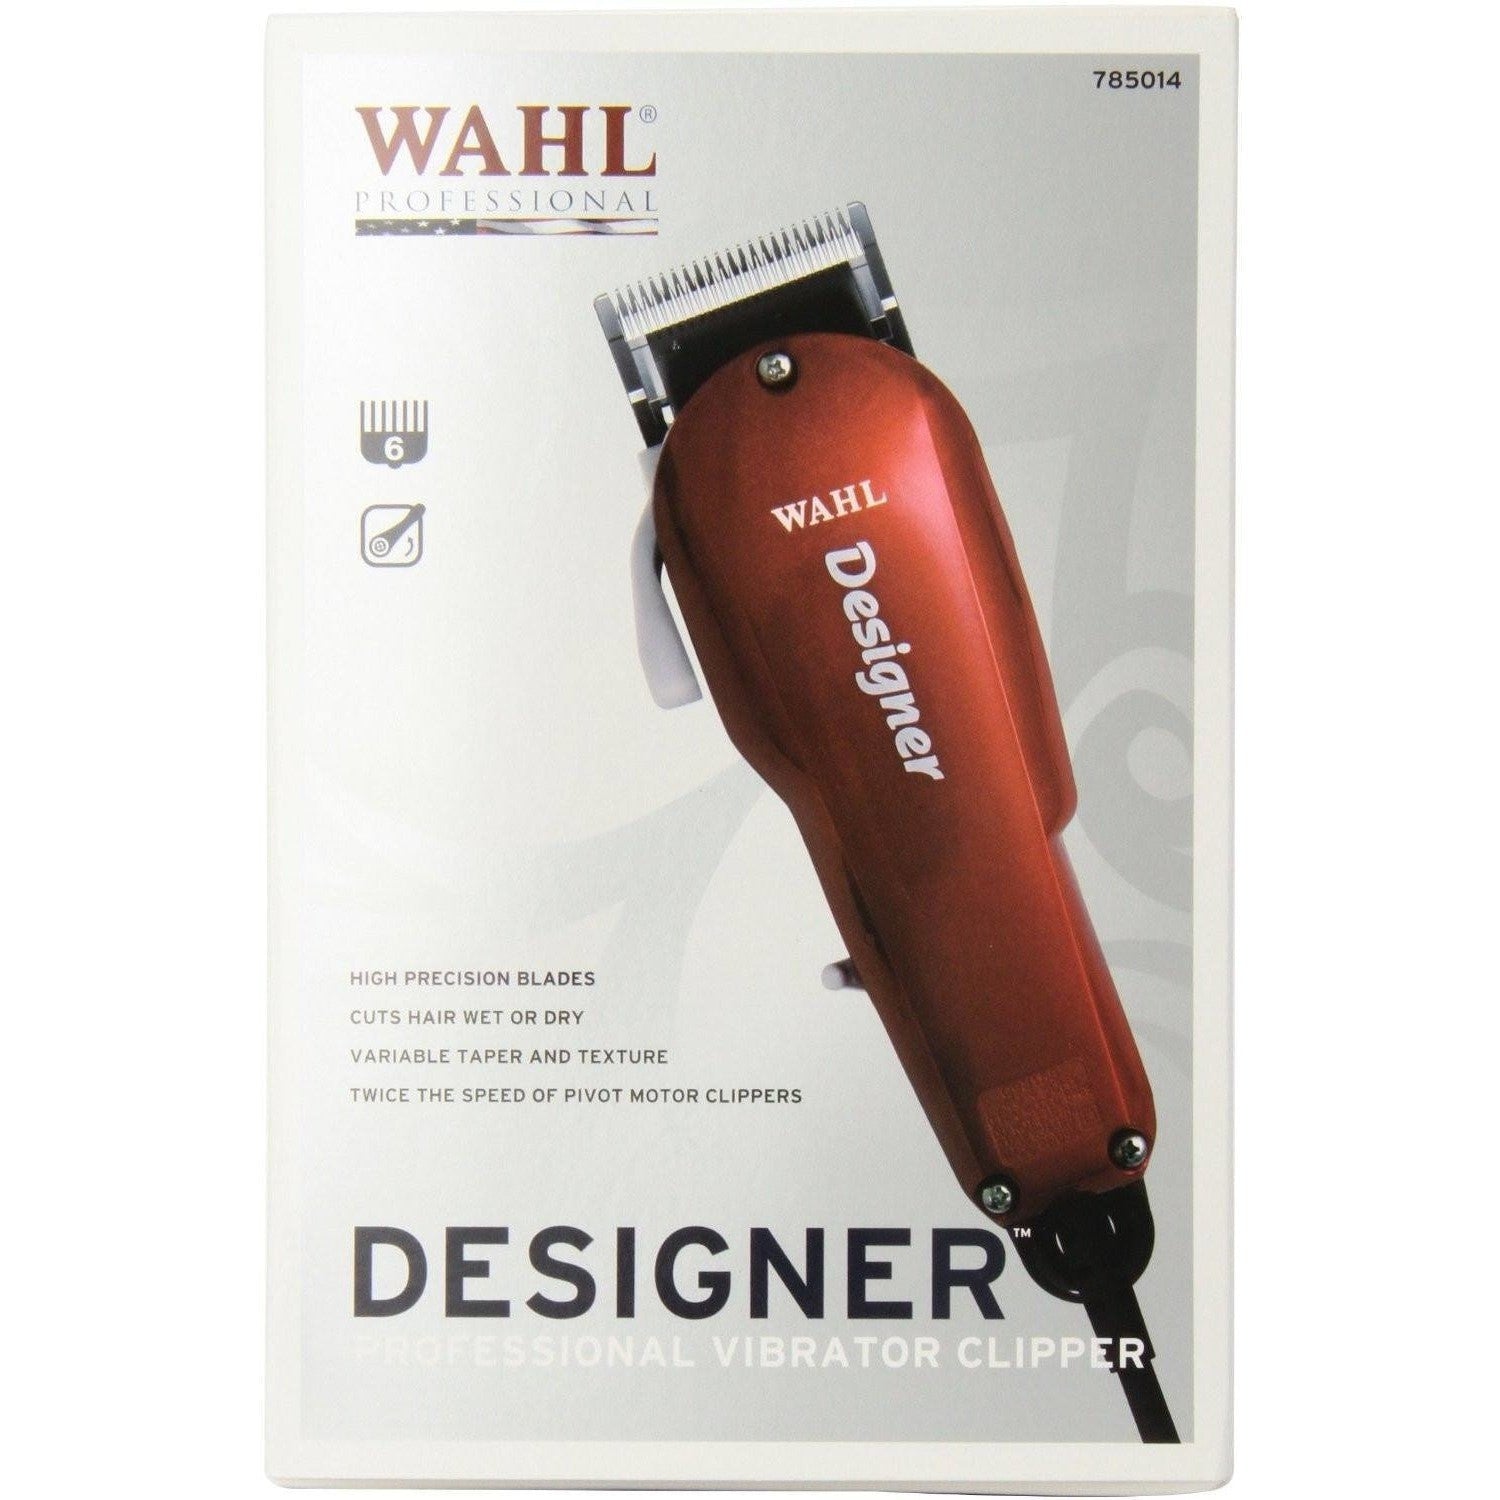 wahl designer review